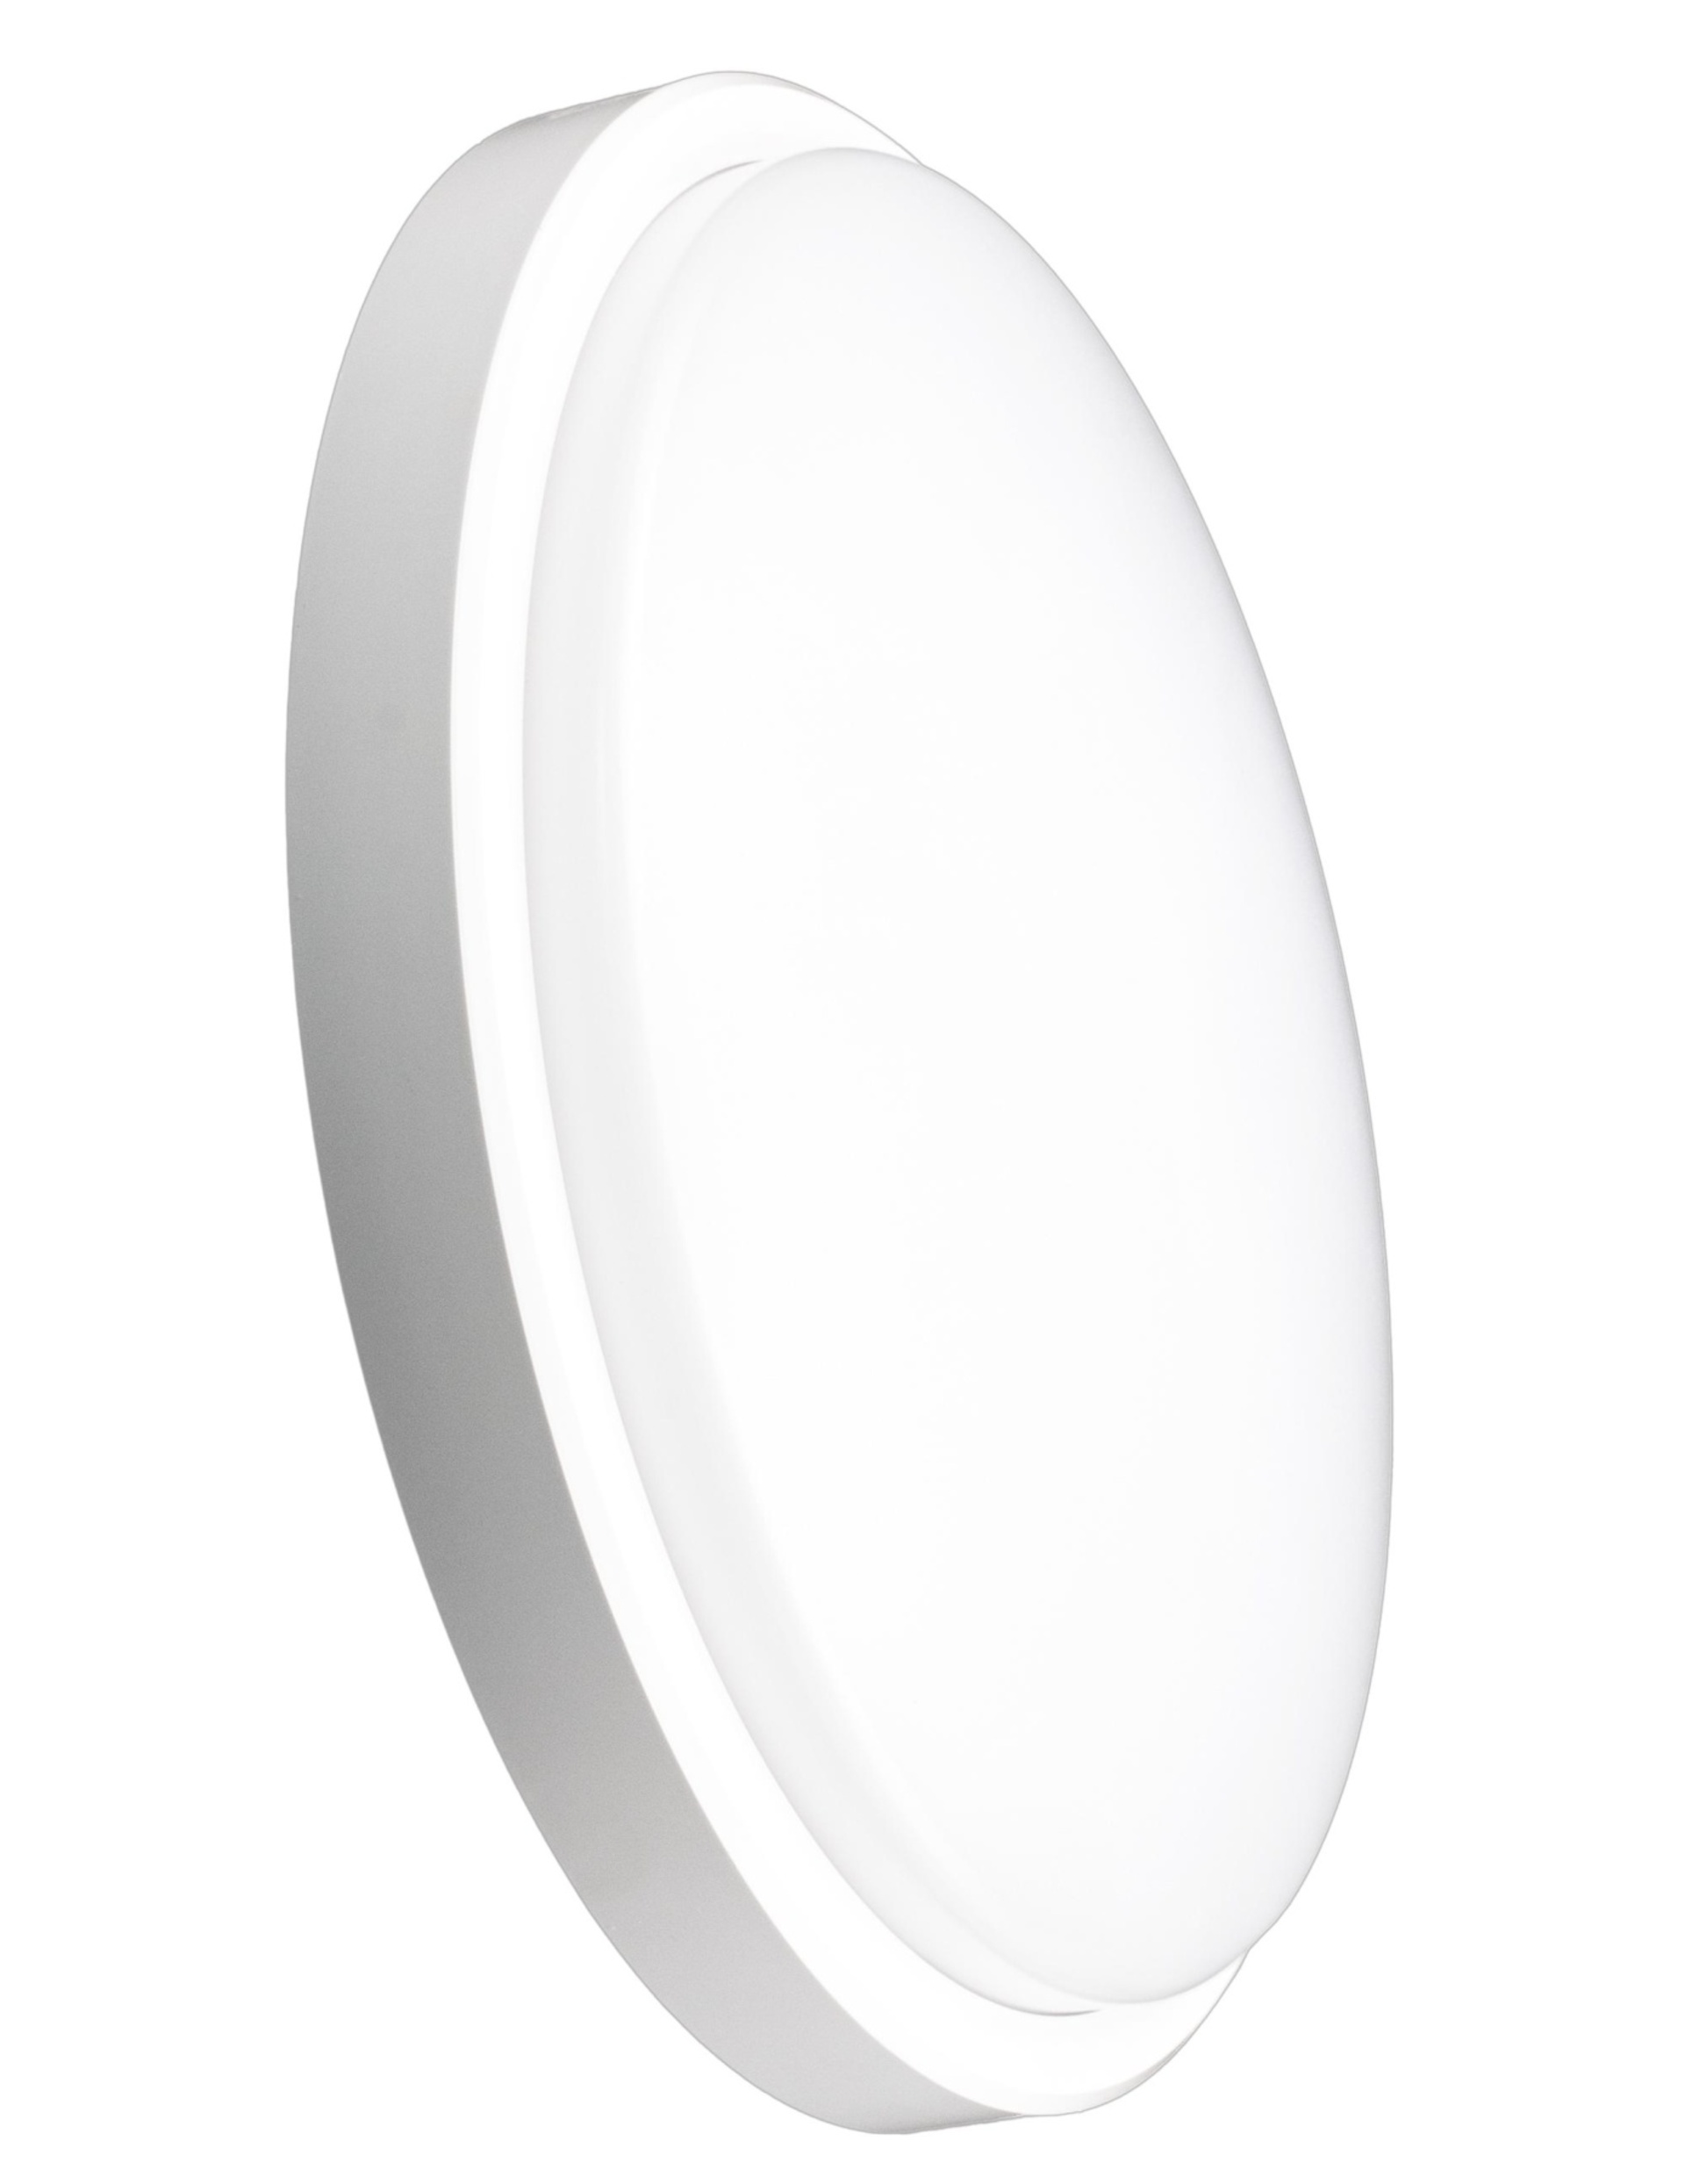 CENTURY OASI65 LED stropní svítidlo kulaté bílé 36W 3200lm 3CCT 3000K/4000K/6500K IP65 WHITE